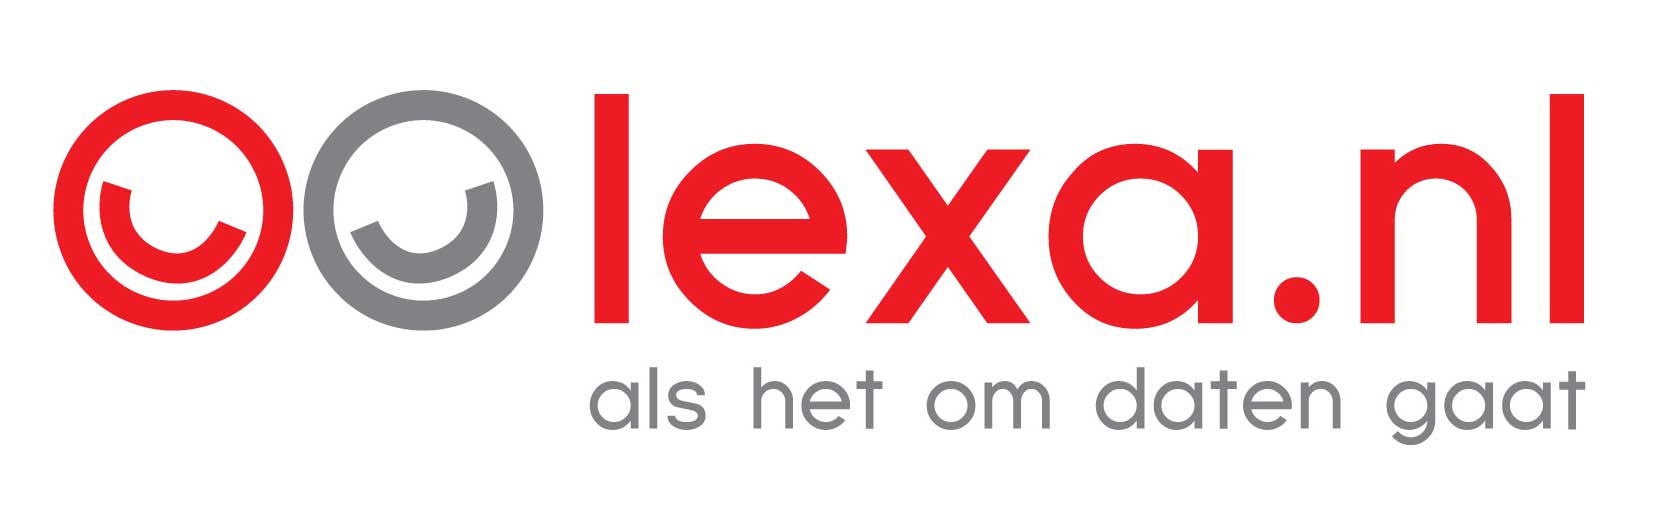 Lexa.nl introduceert daten via smartwatch